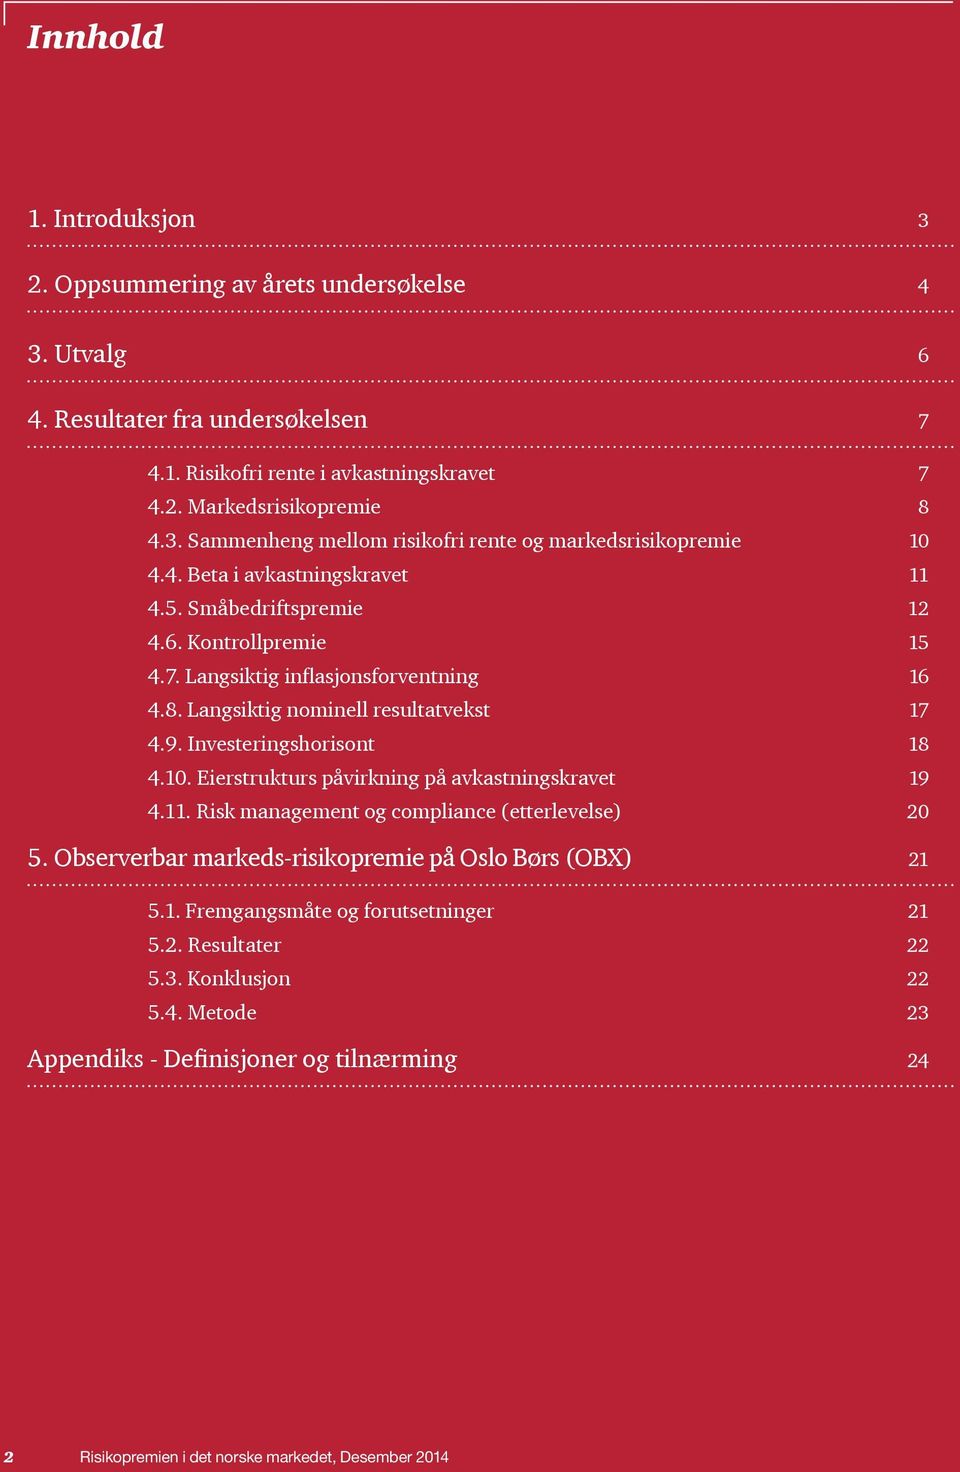 Eierstrukturs påvirkning på avkastningskravet 19 4.11. Risk management og compliance (etterlevelse) 20 5. Observerbar markeds-risikopremie på Oslo Børs (OBX) 21 5.1. Fremgangsmåte og forutsetninger 21 5.